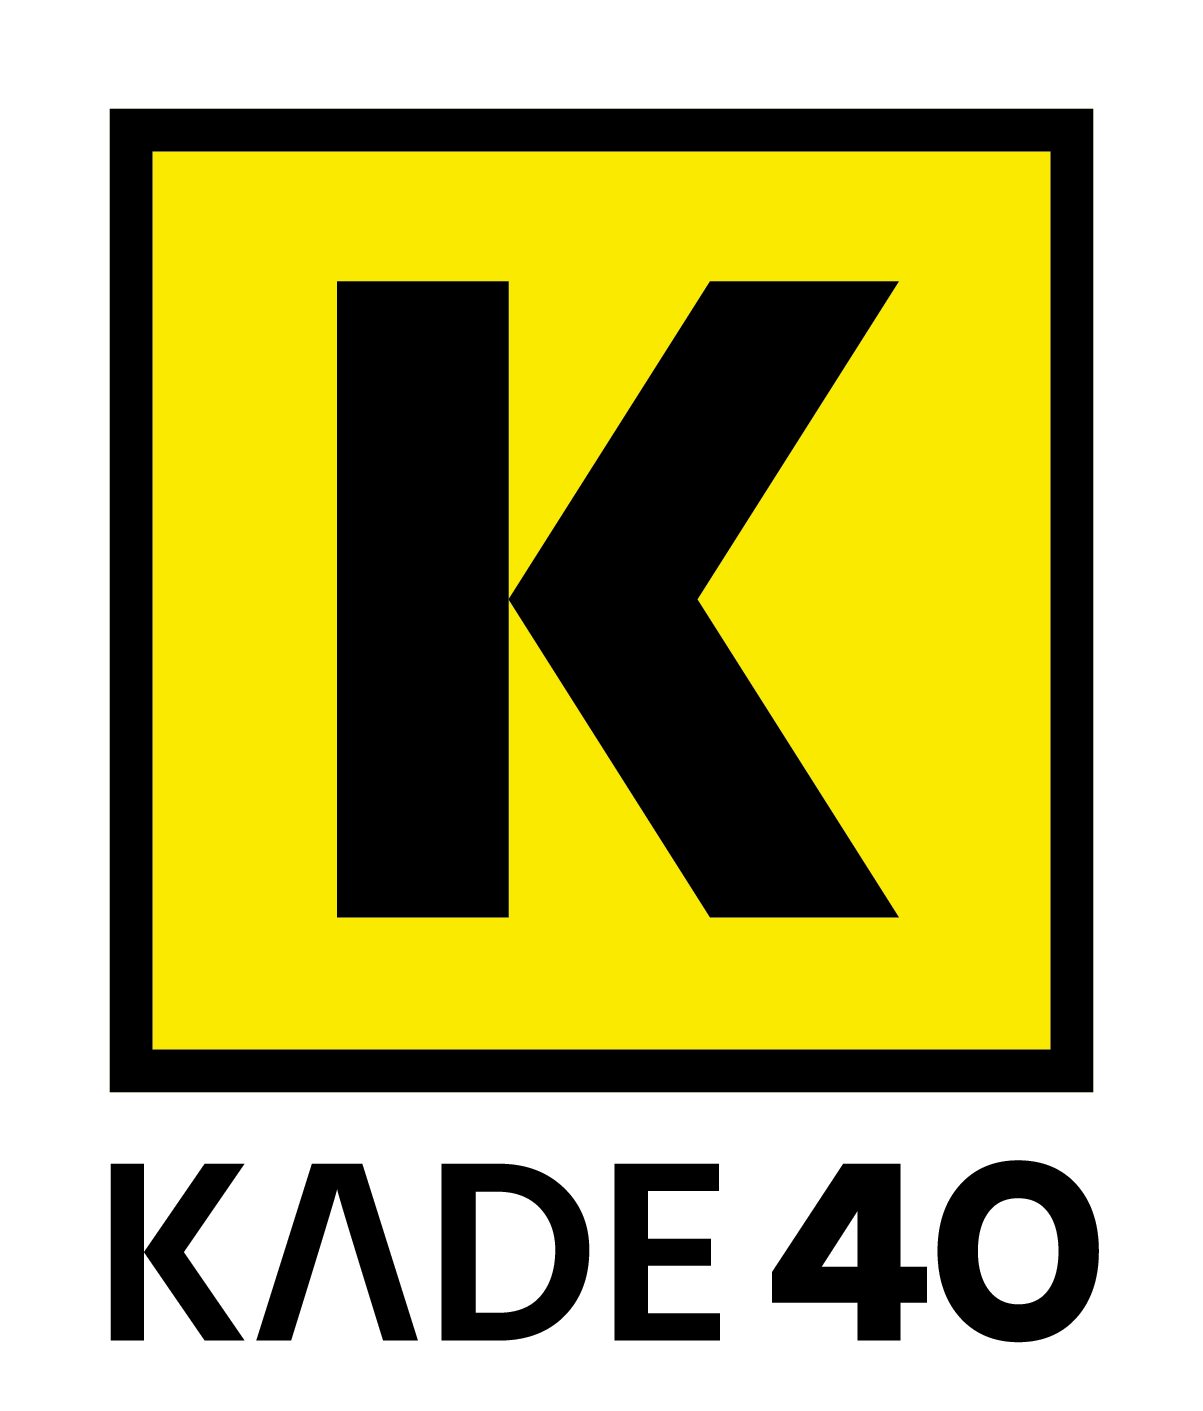 KADE40